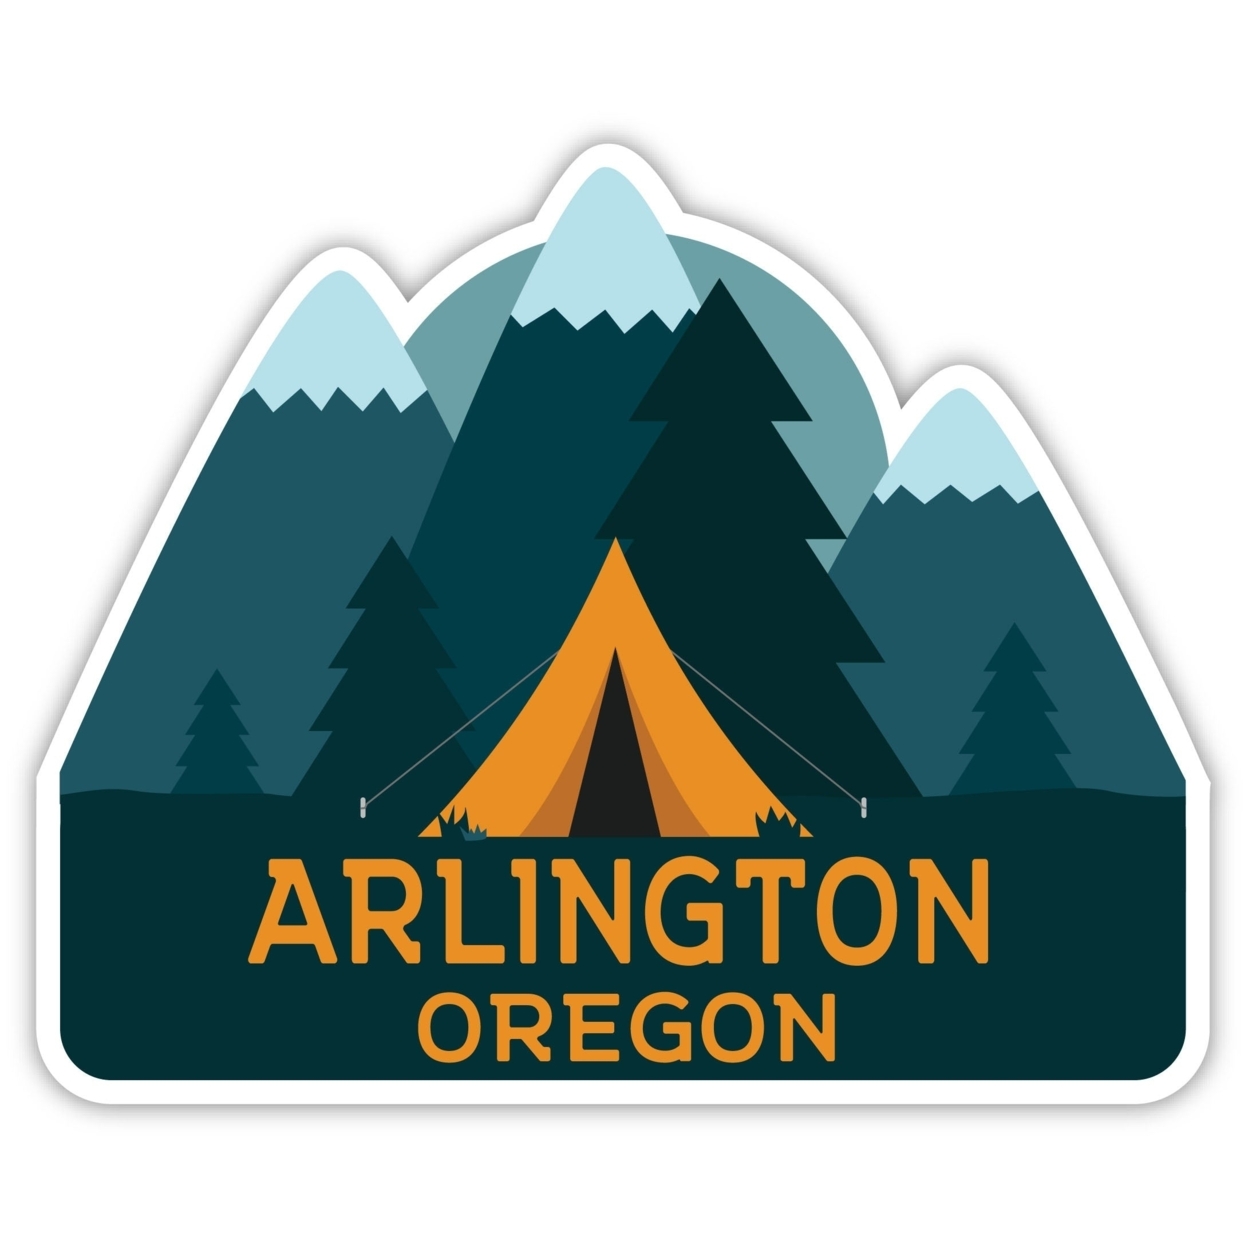 Arlington Oregon Souvenir Decorative Stickers (Choose Theme And Size) - Single Unit, 6-Inch, Tent